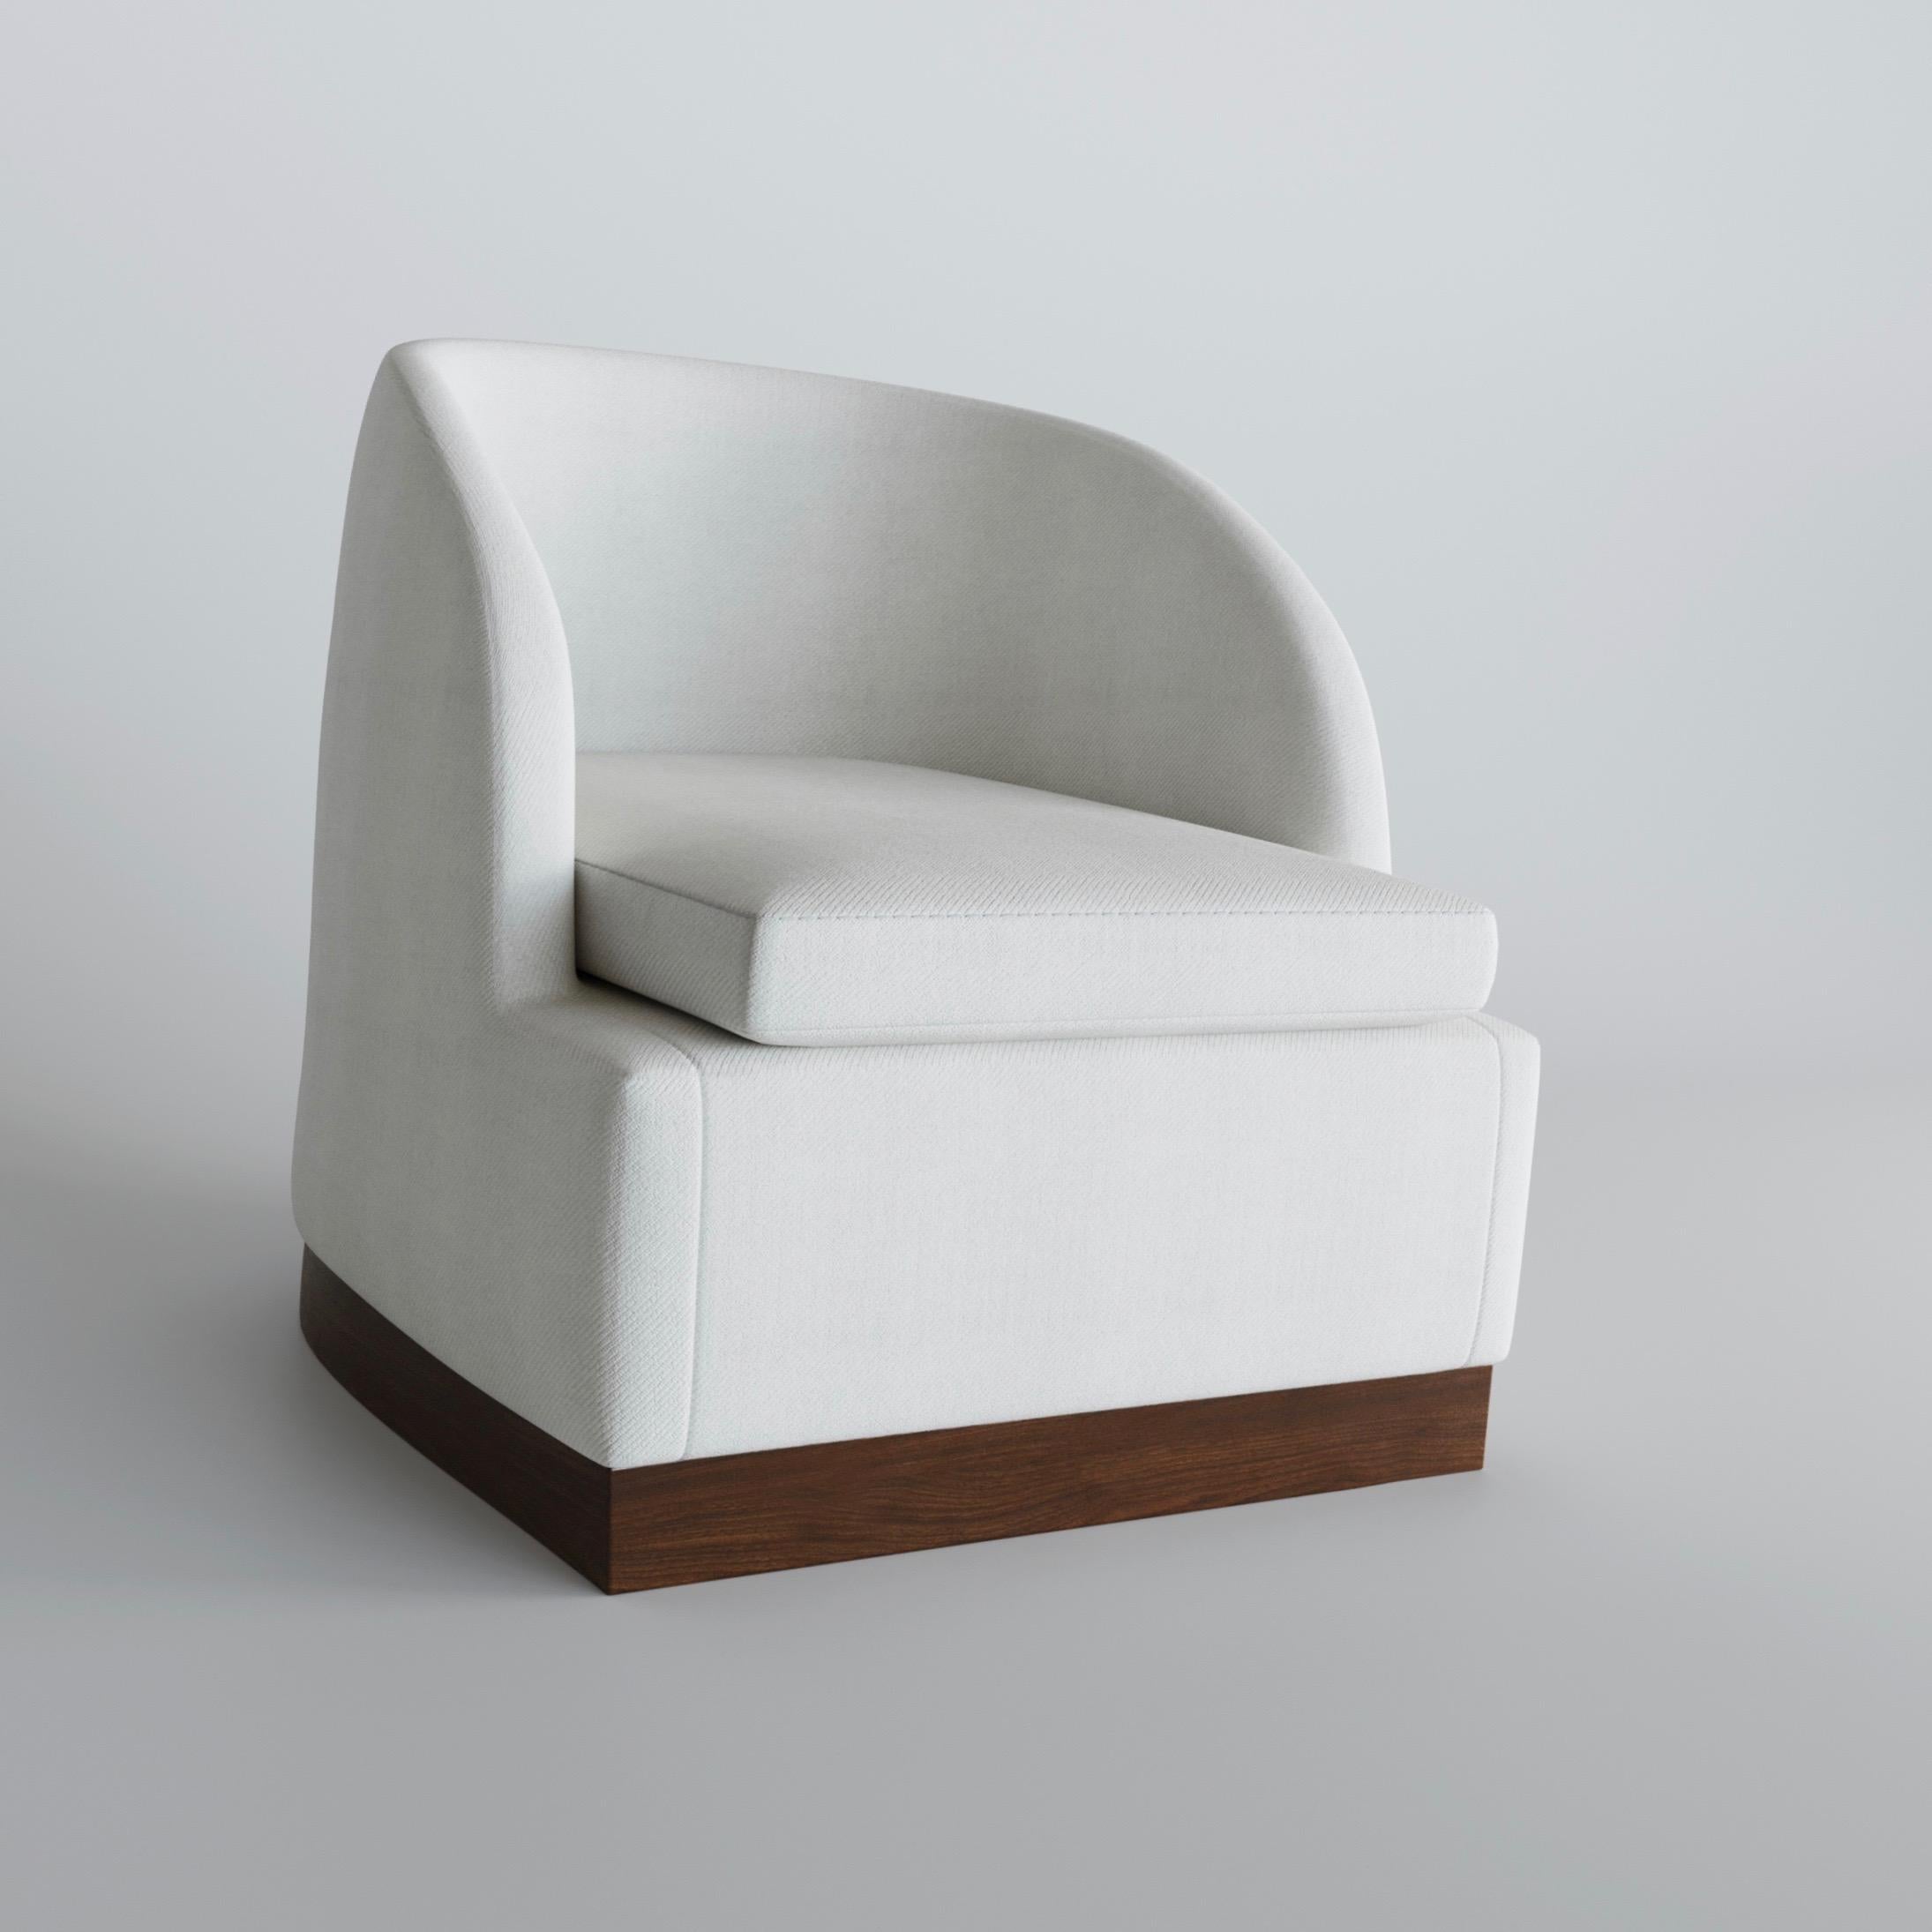 
Un fauteuil pivotant à la fois élégant et robuste. Nous adorons cette chaise simple avec des détails parfaits tels que la base en noyer massif, le luxueux rembourrage en laine et les magnifiques coutures. Ou n'hésitez pas à spécifier une finition